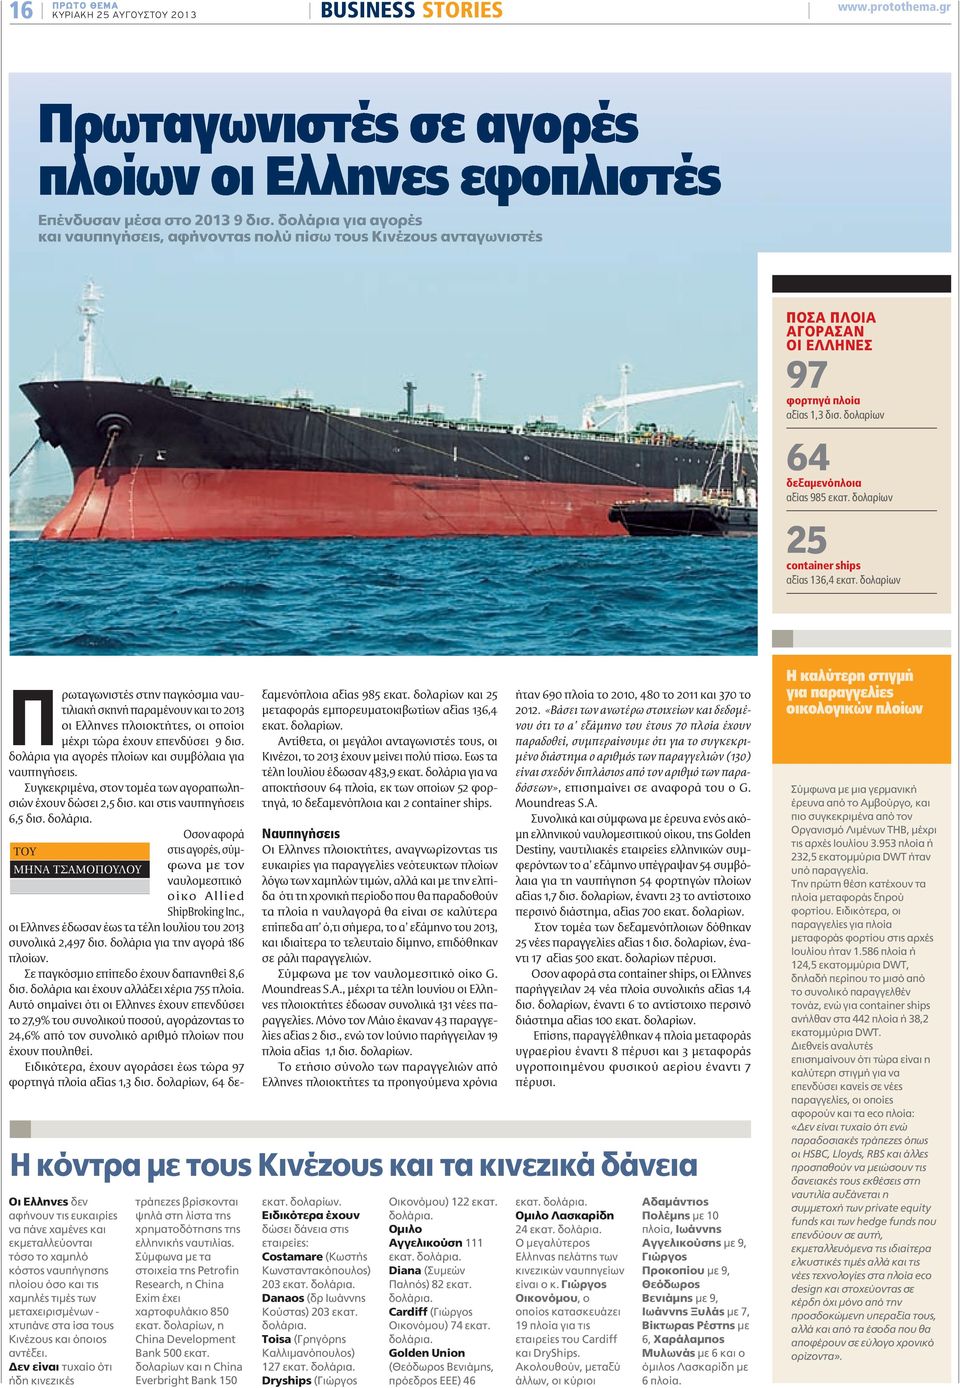 δολαρίων 25 container ships αξίας 136,4 εκατ. δολαρίων Πρωταγωνιστές στην παγκόσµια ναυτιλιακή σκηνή παραµένουν και το 2013 οι Ελληνες πλοιοκτήτες, οι οποίοι µέχρι τώρα έχουν επενδύσει 9 δισ.